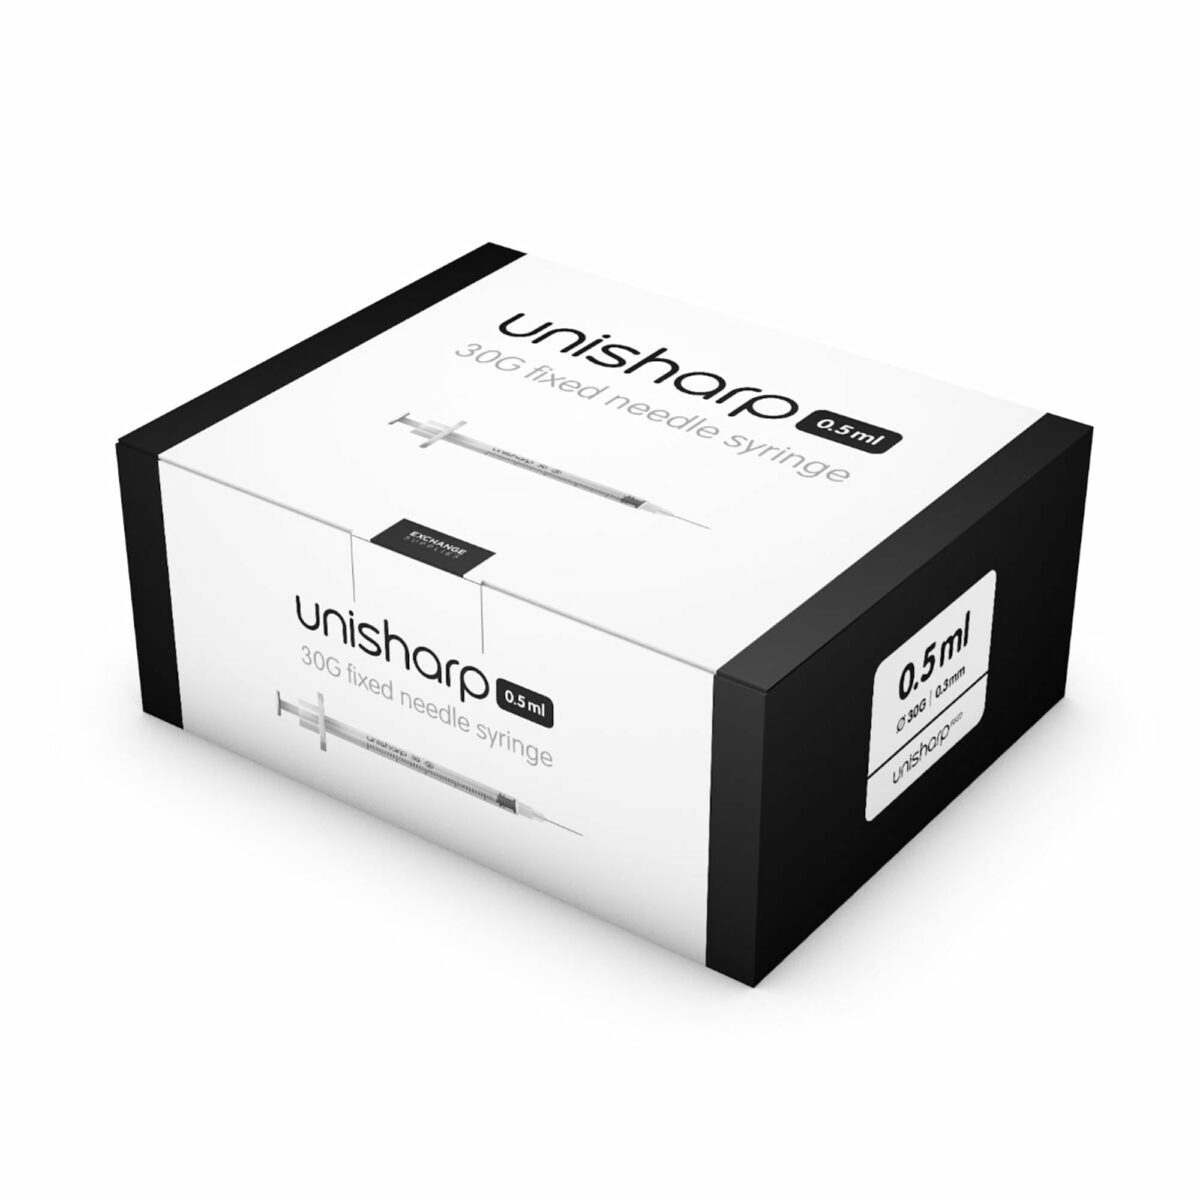 unisharp unisharp 0.5ml 30g 12mm fixed needle syringe 16006 1 39151